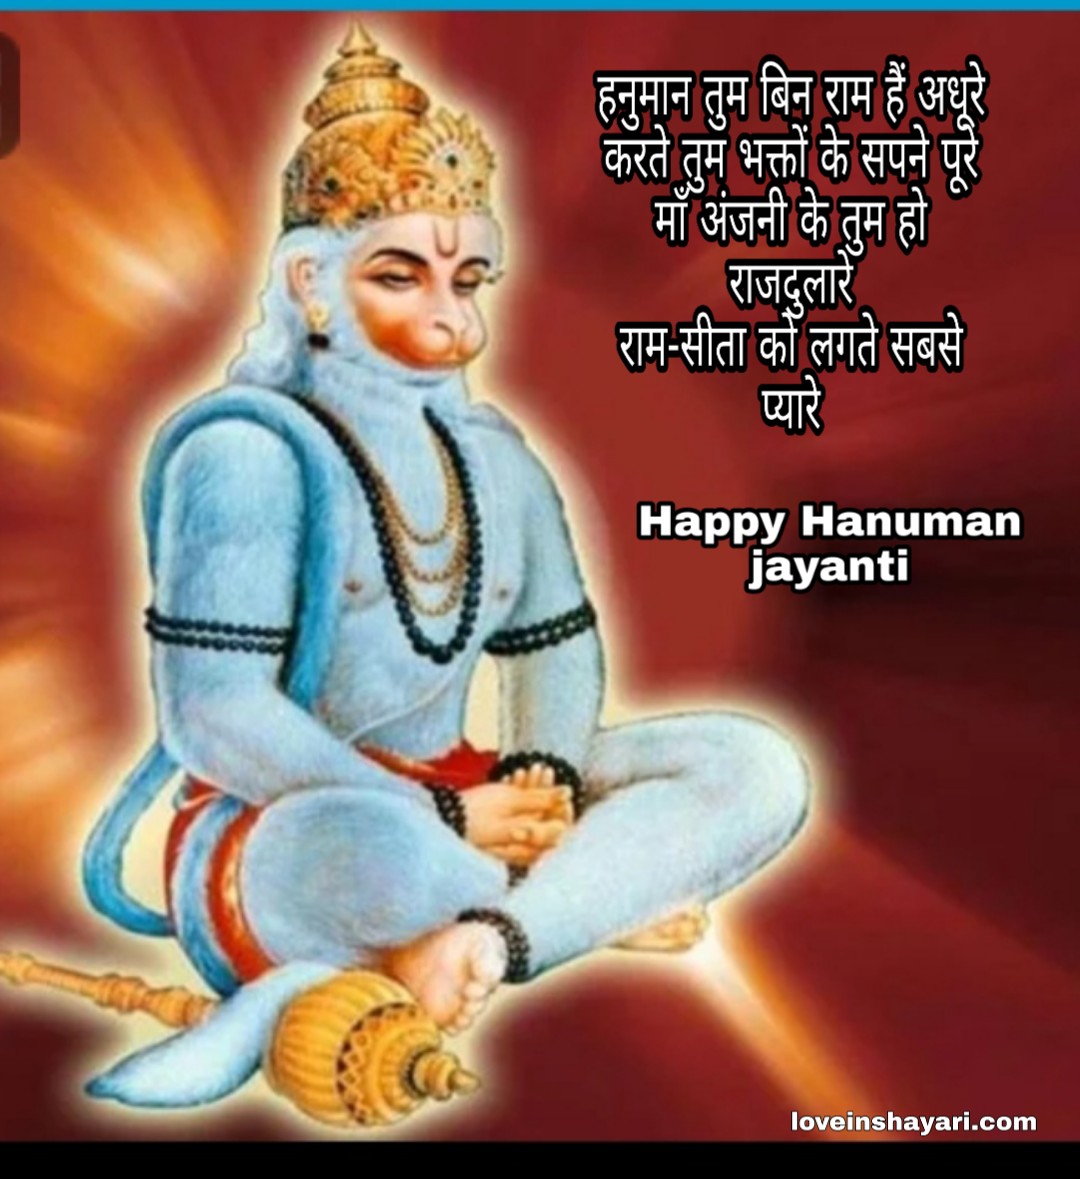 Hanuman jayanti wishes shayari quotes messages